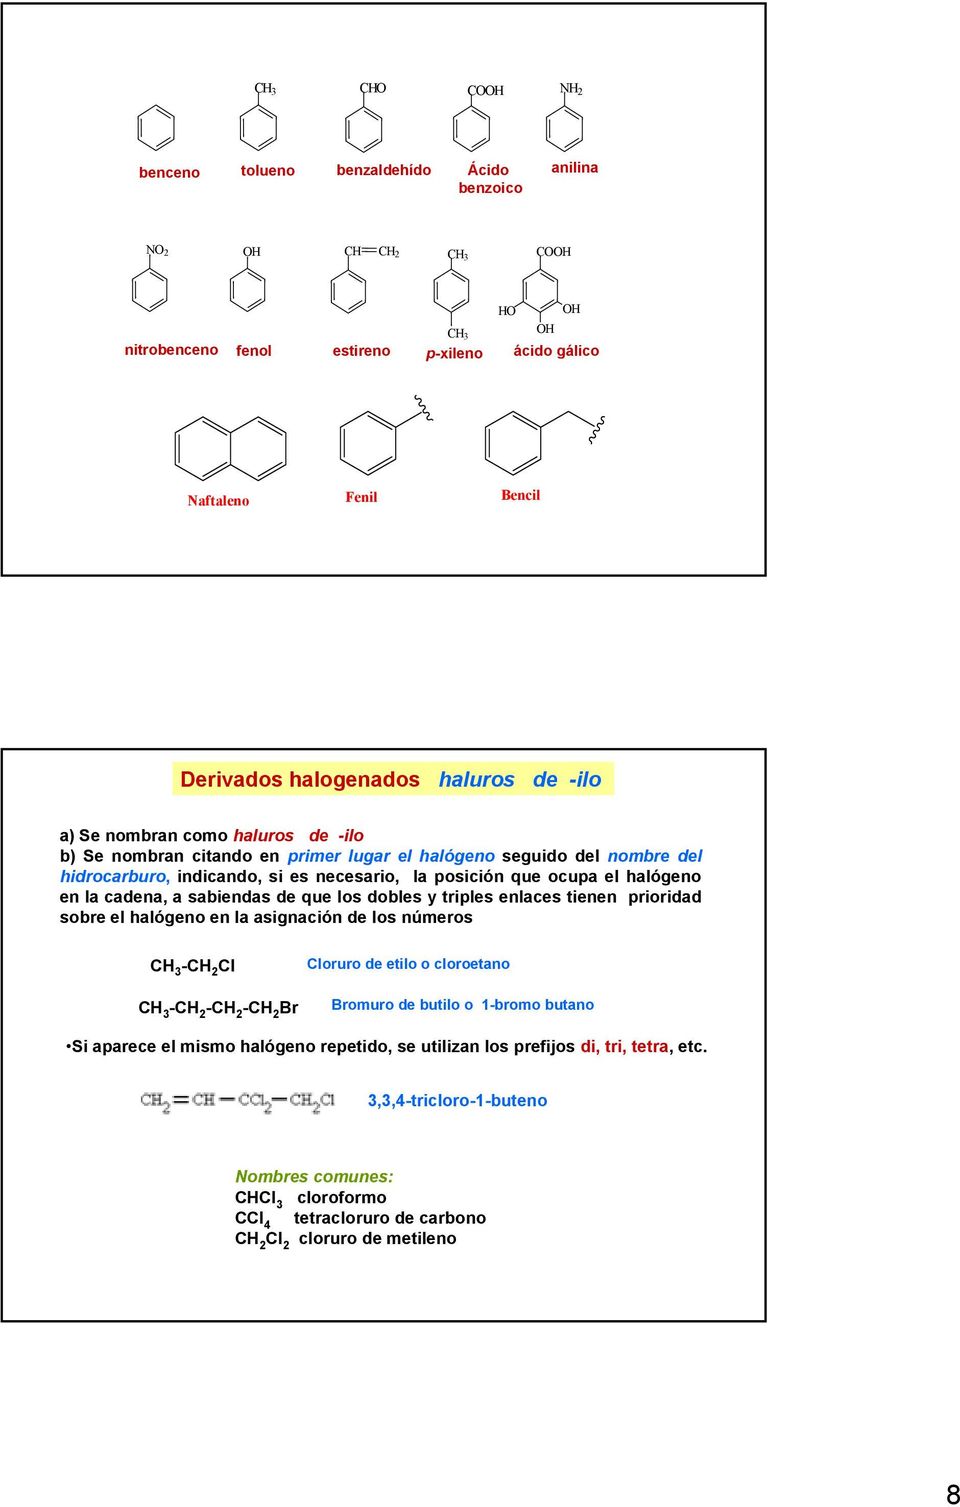 en la cadena, a sabiendas de que los dobles y triples enlaces tienen prioridad sobre el halógeno en la asignación de los números - Cl - - - Br Cloruro de etilo o cloroetano Bromuro de butilo o